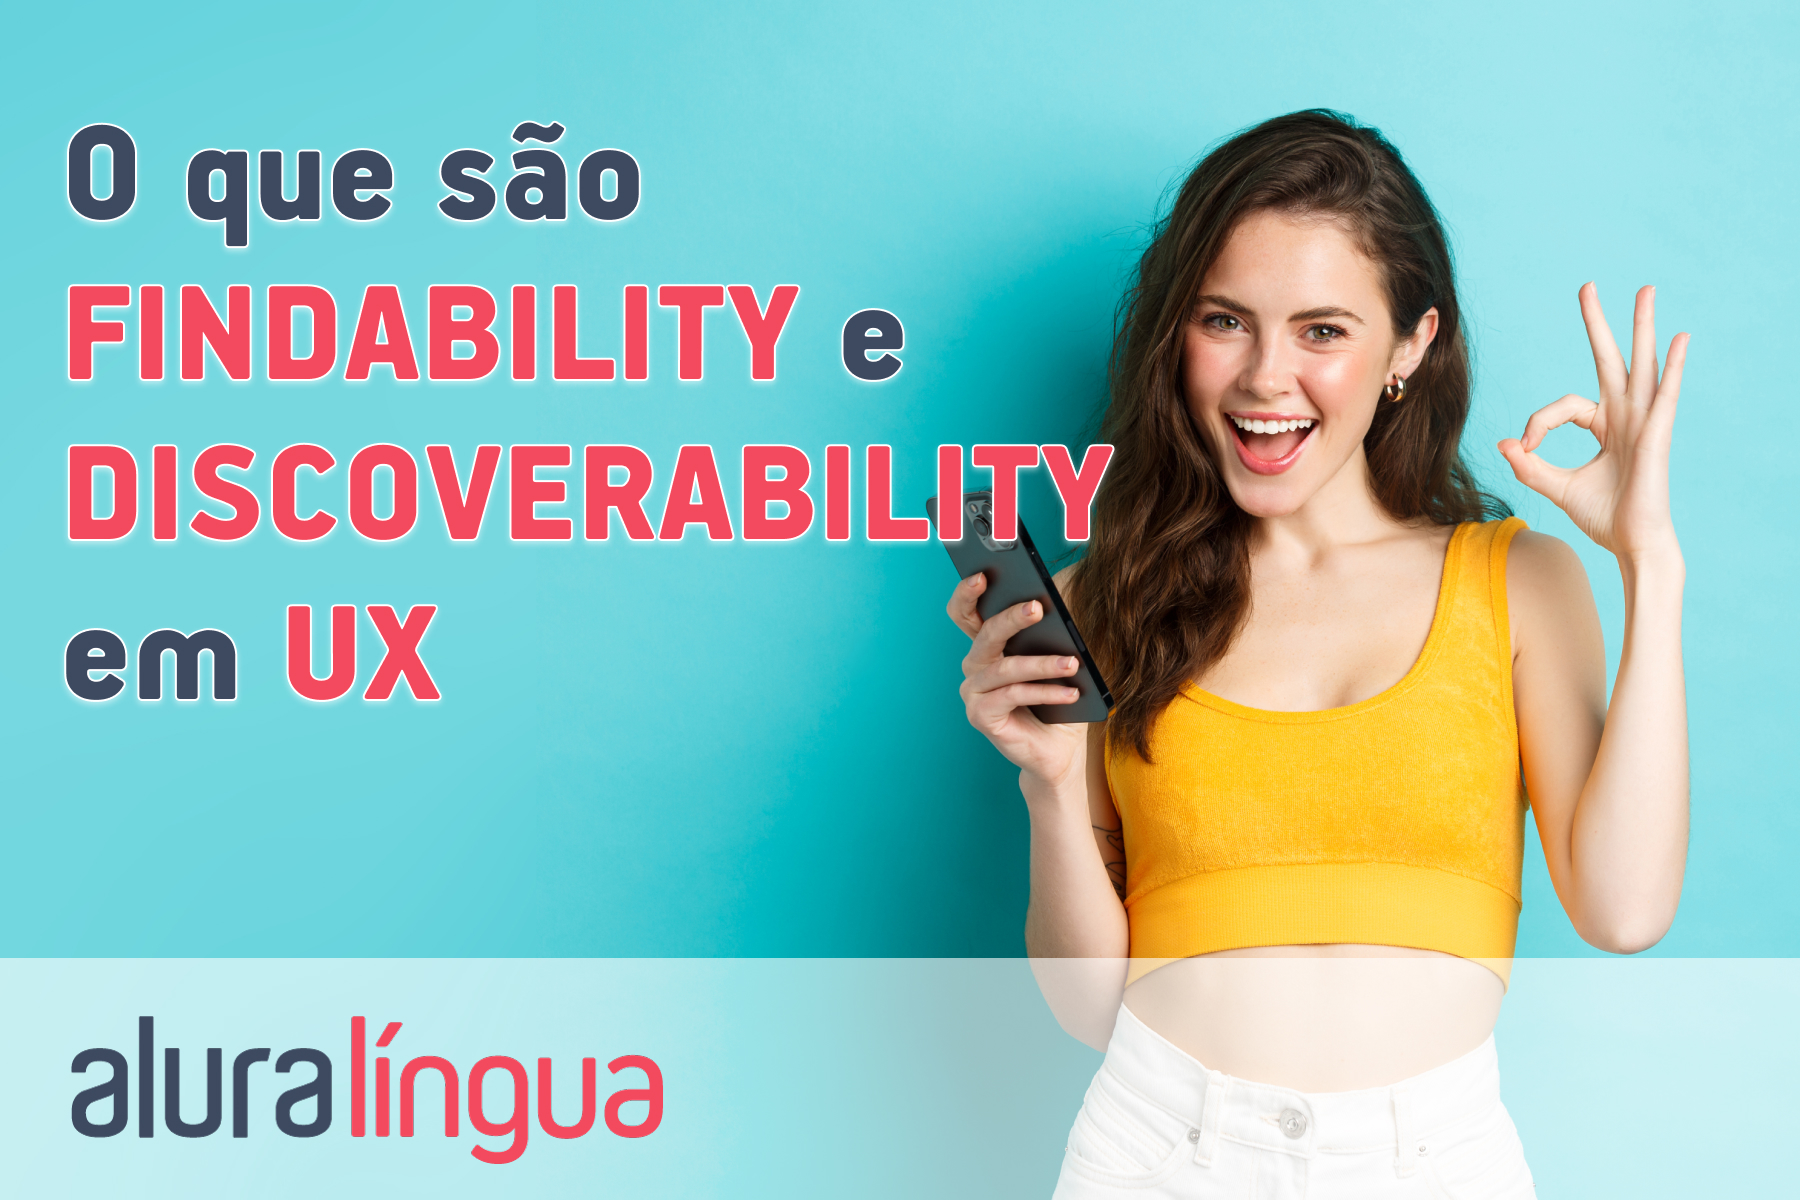 O que são findability e discoverability em ux #inset